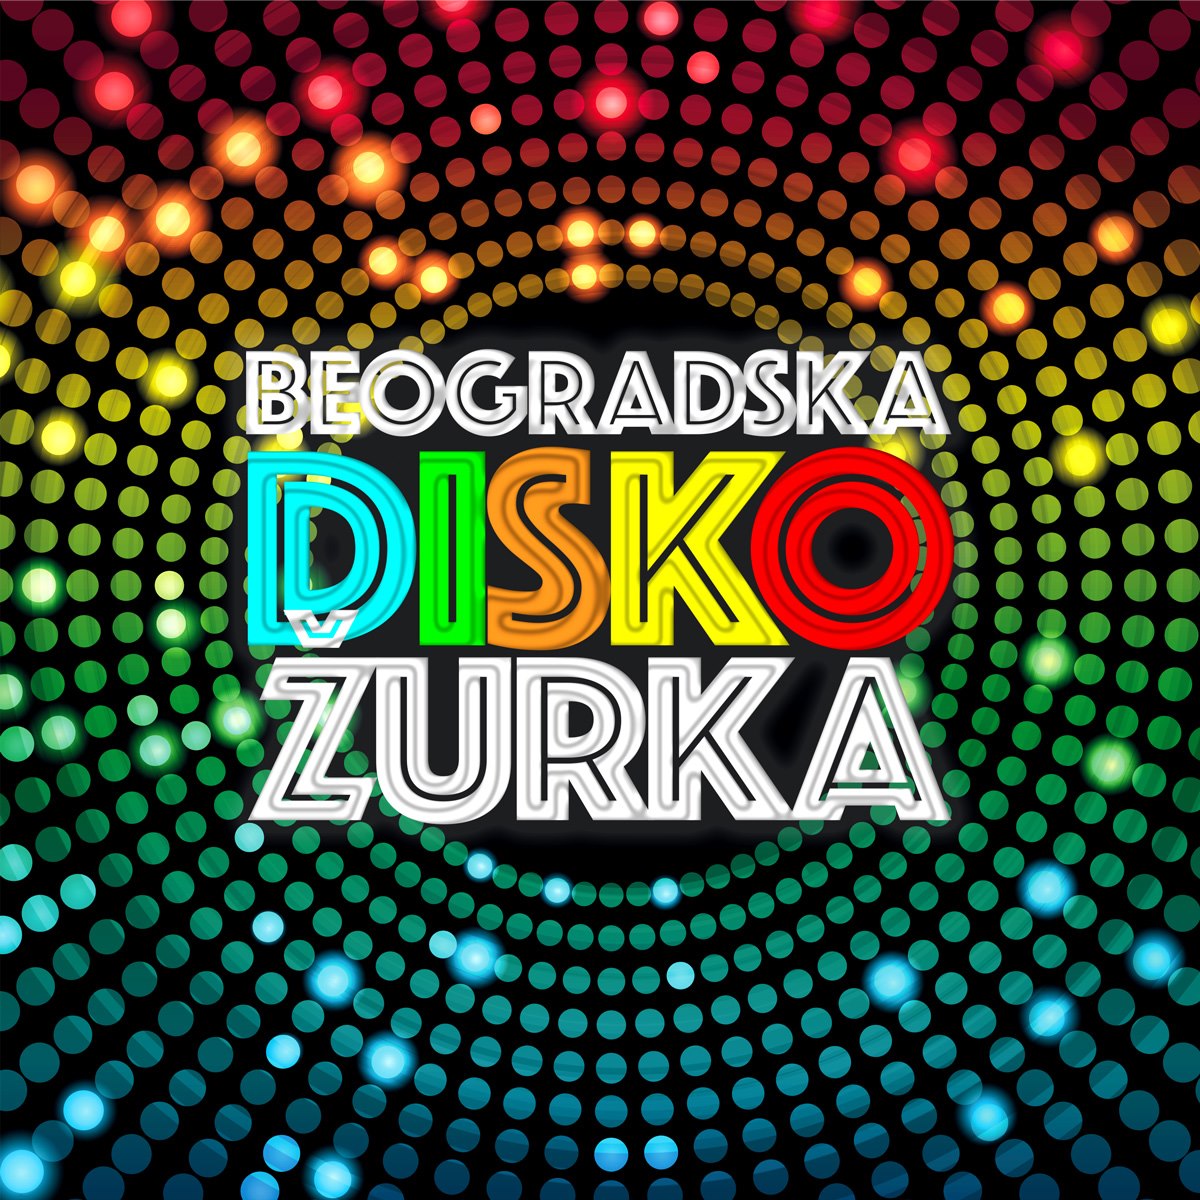 naturally-dance-plesna-skola-beograd-beogradska-disko-zurka